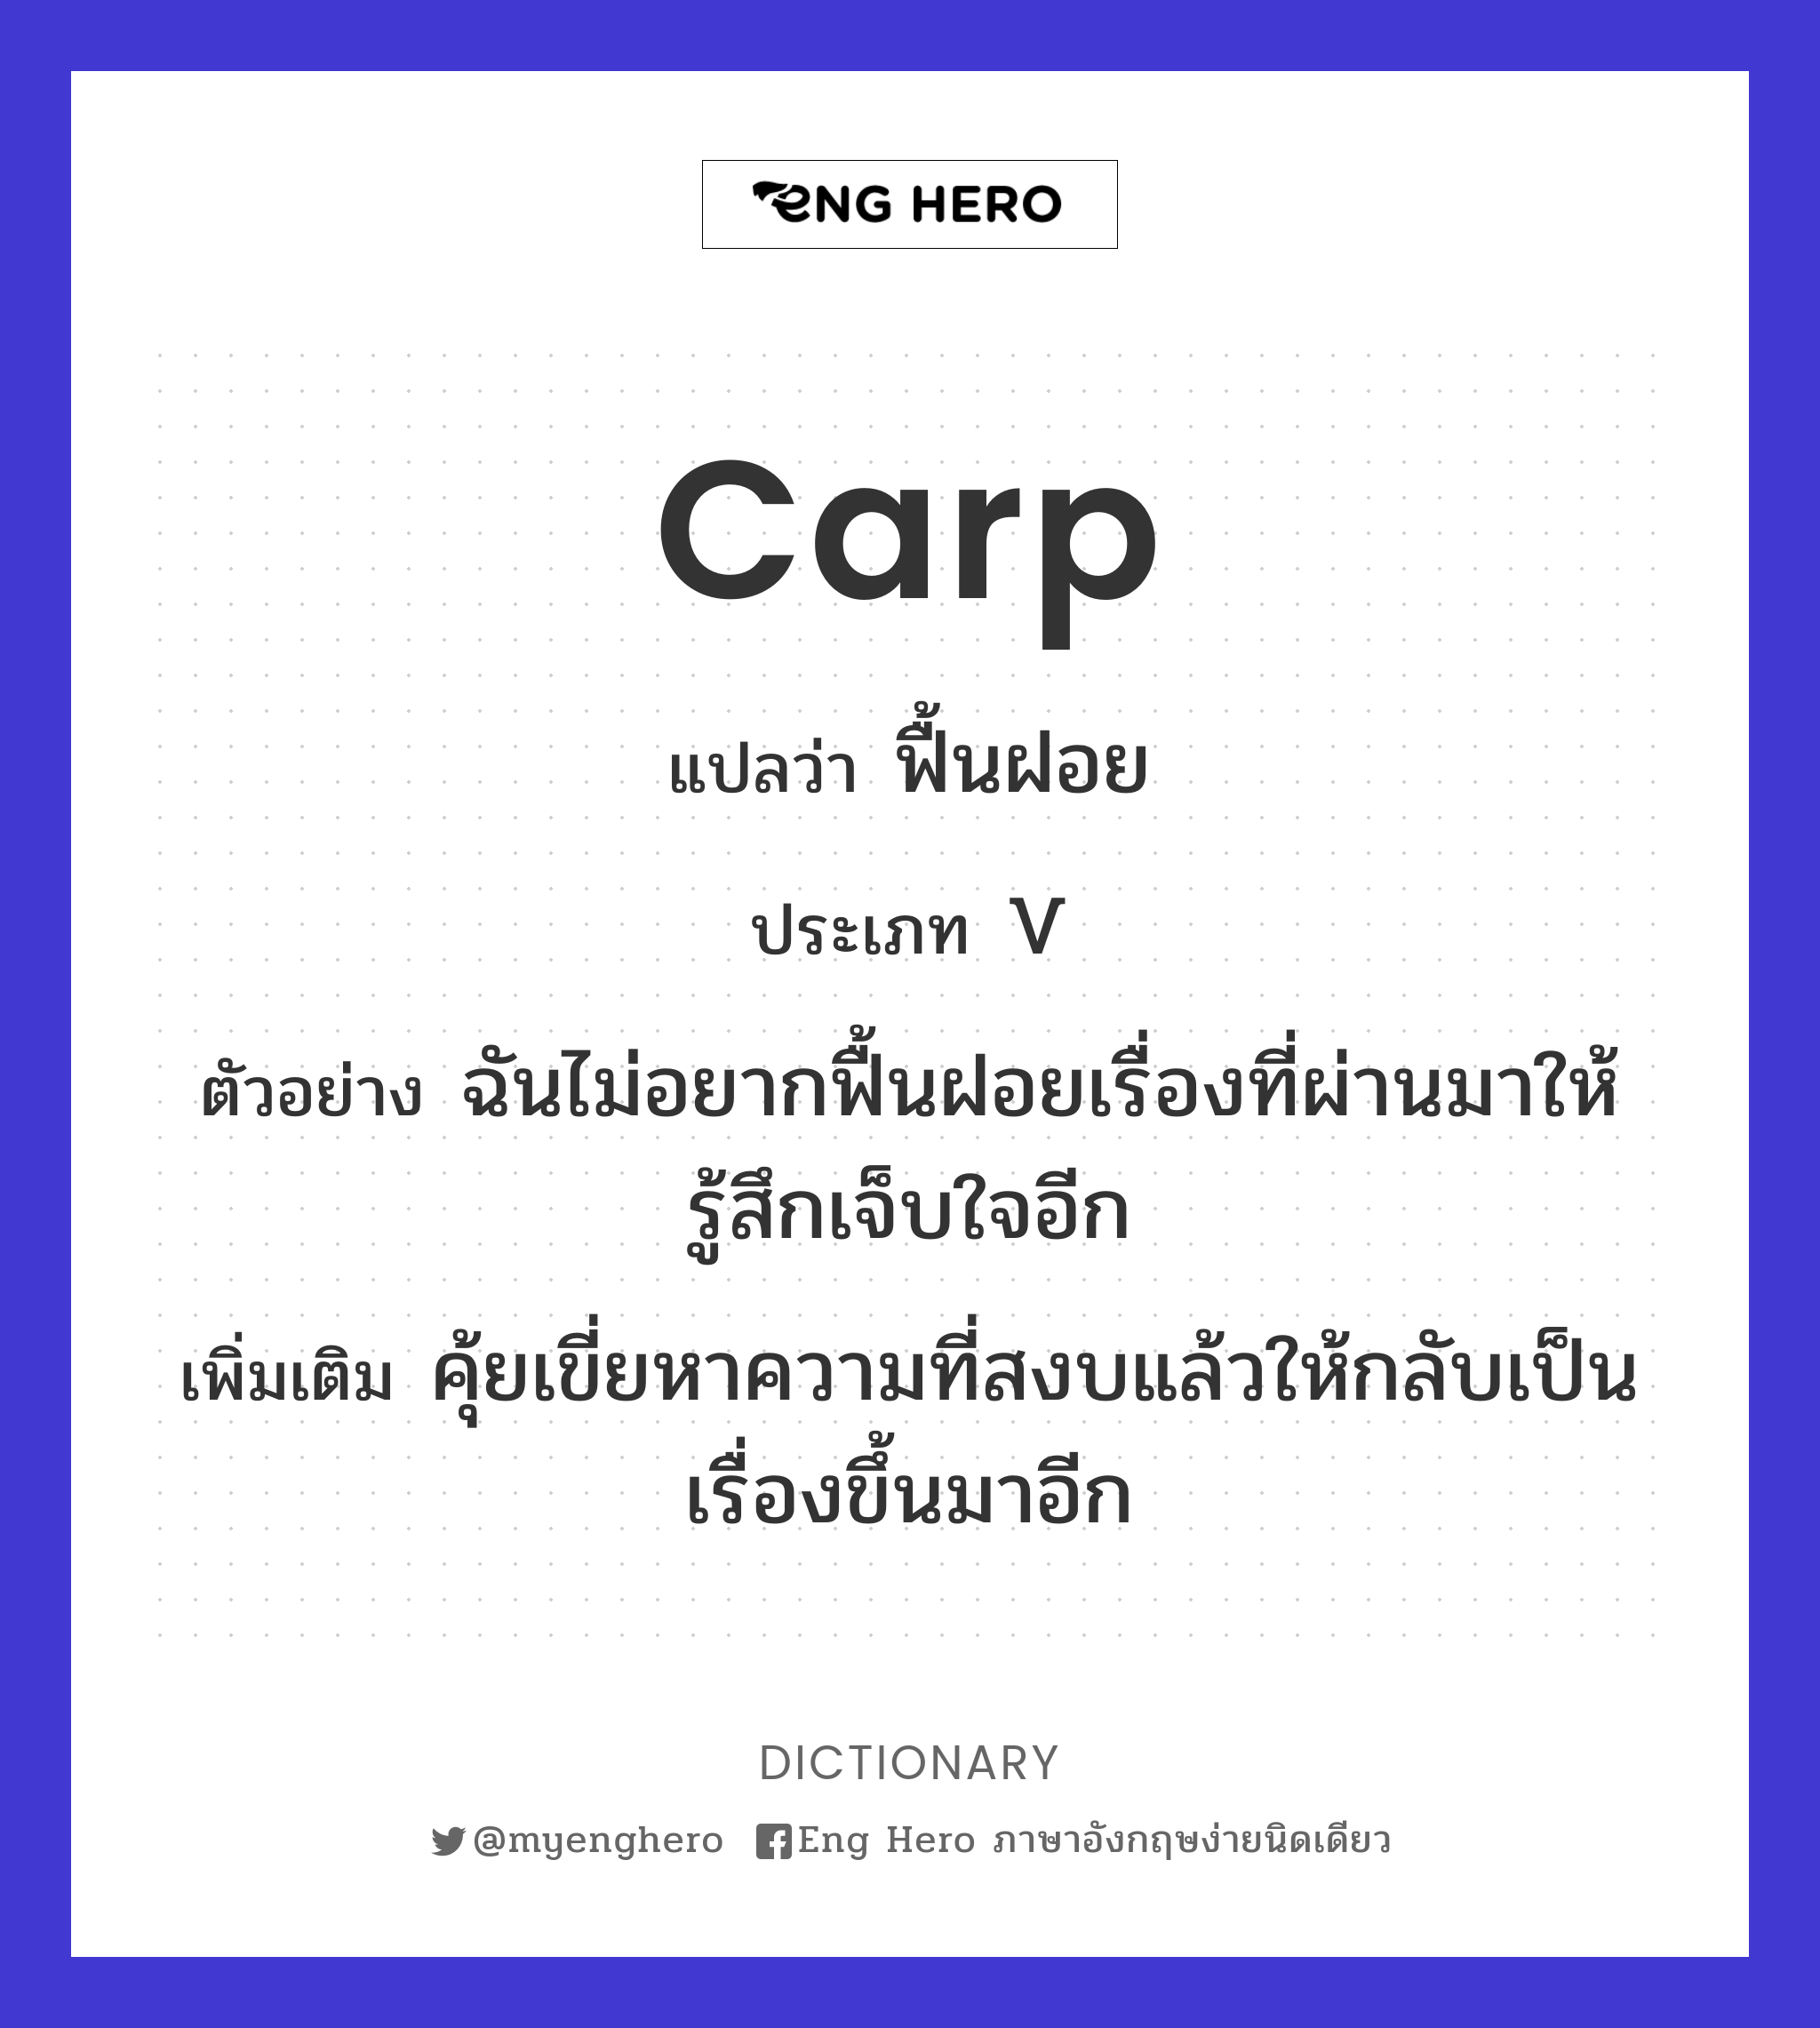 carp